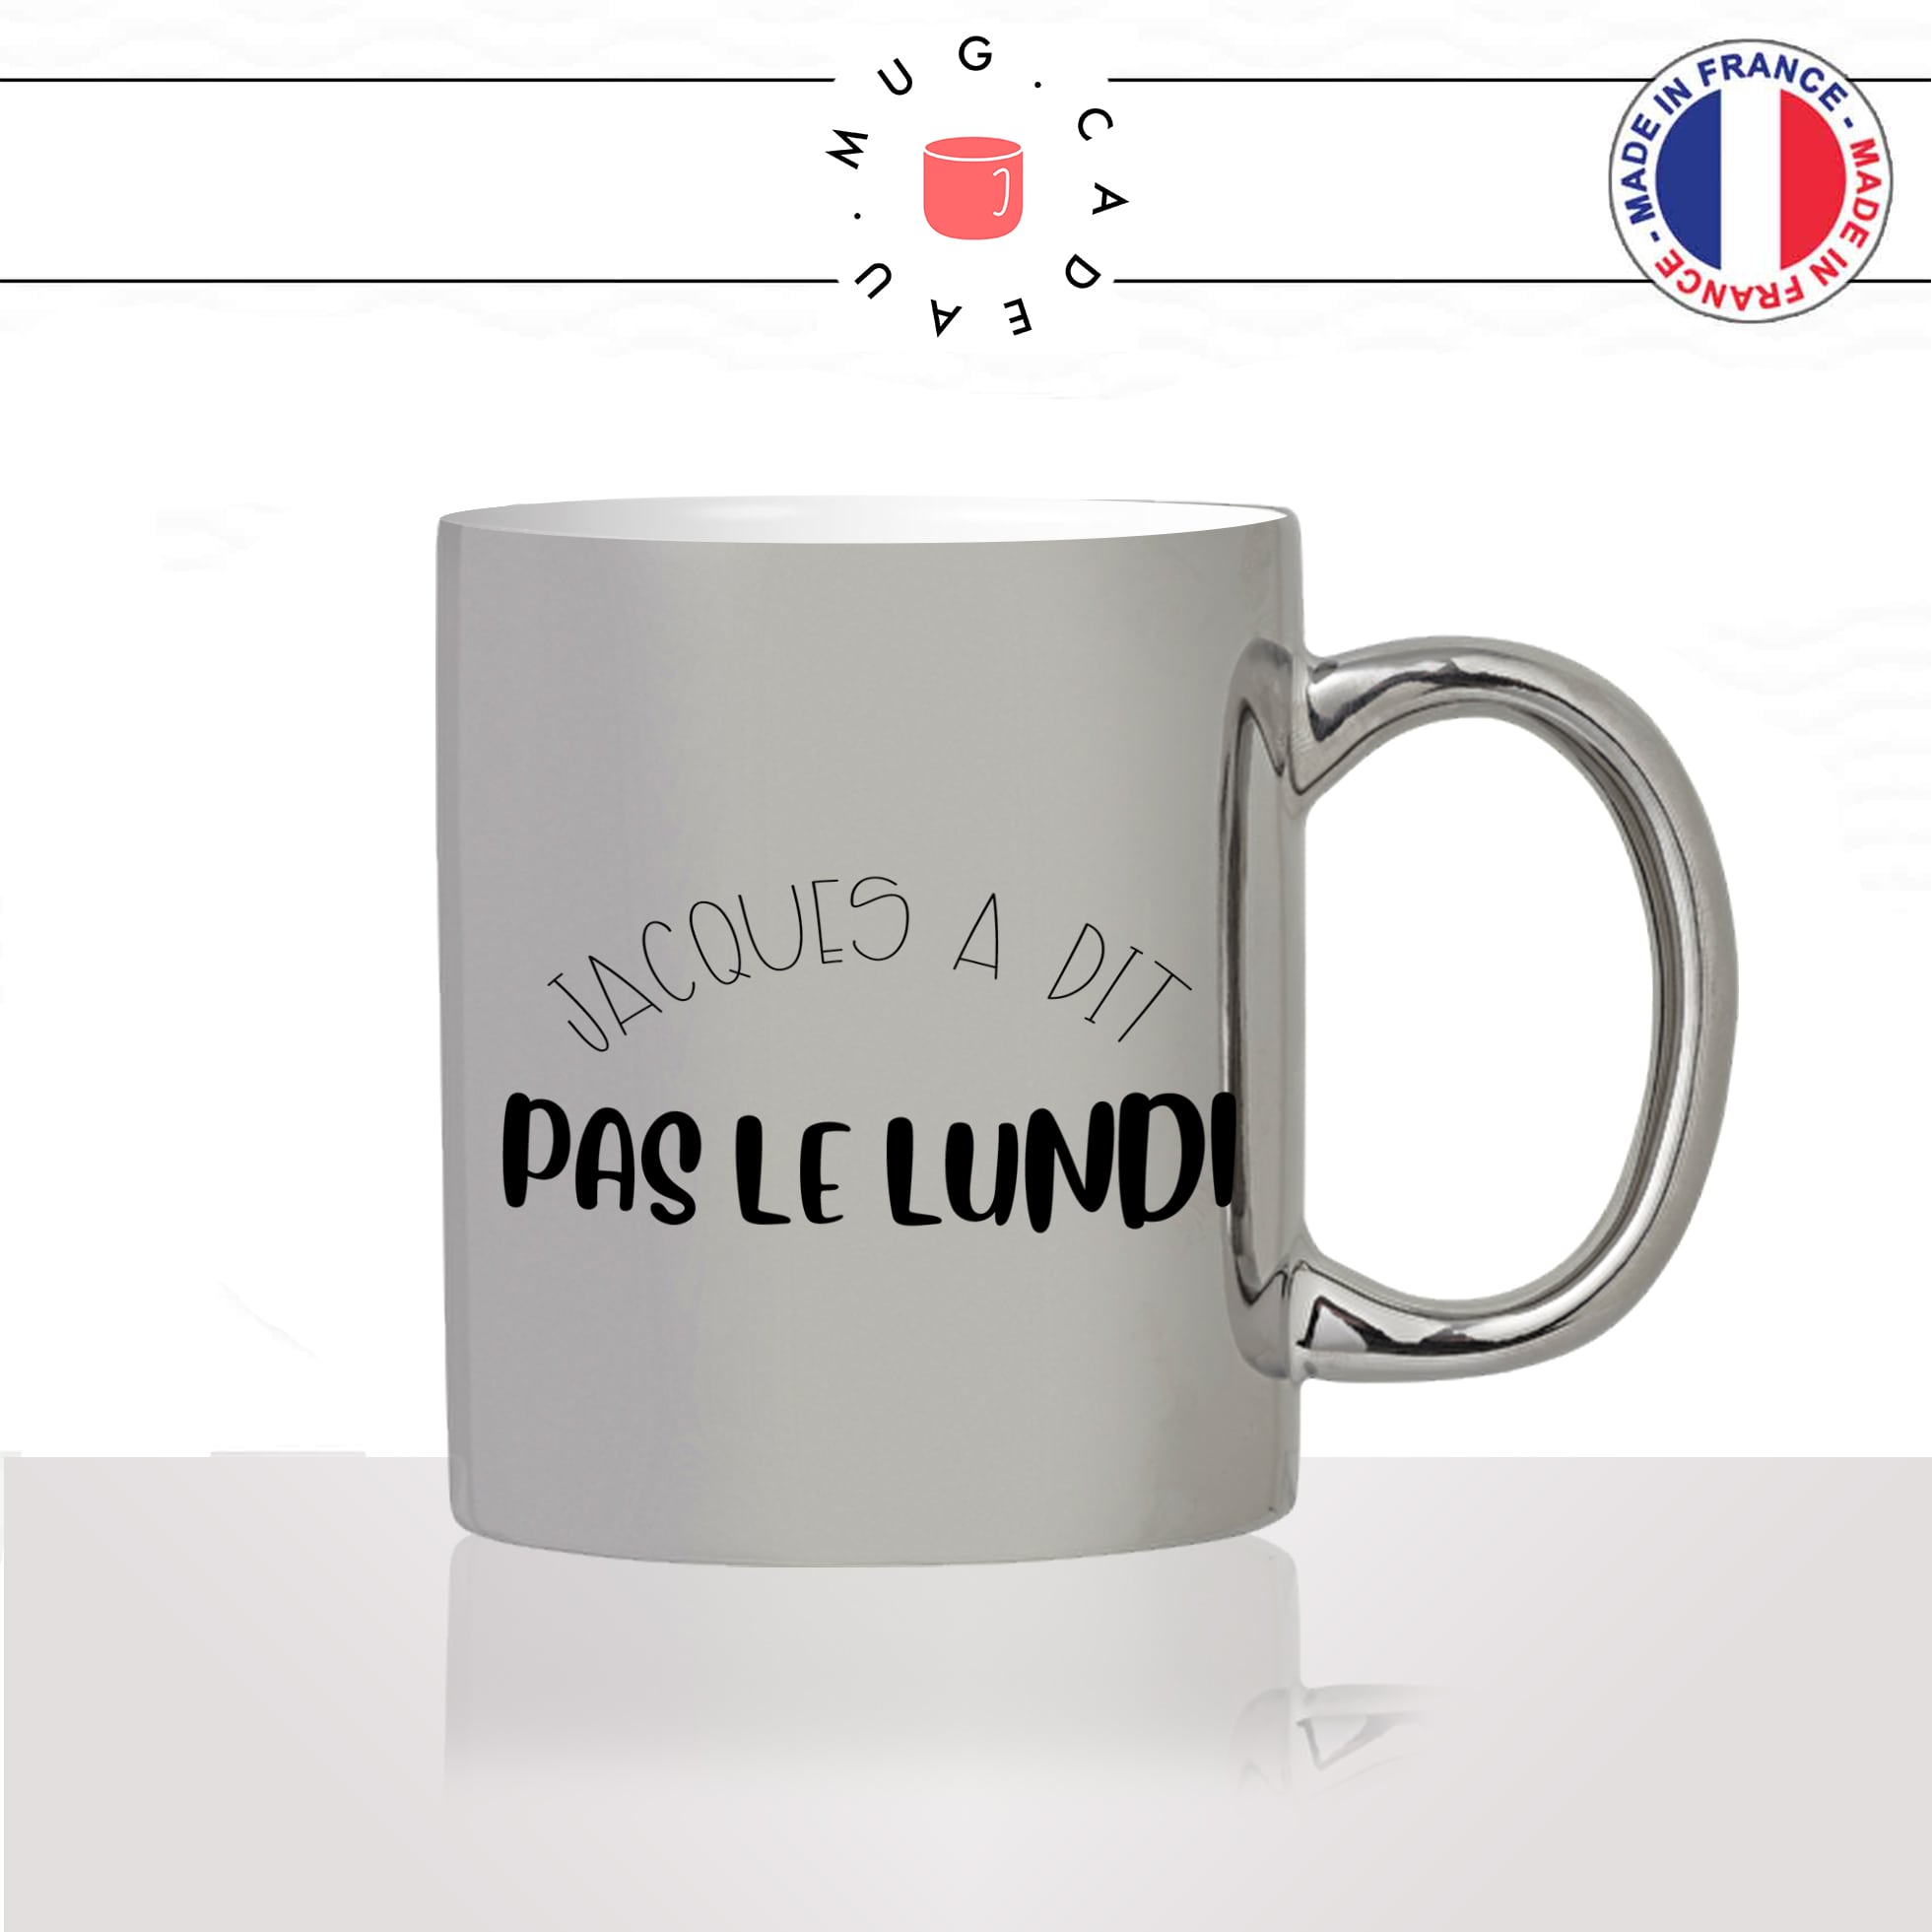 mug-tasse-argent-argenté-silver-jacques-a-dit-pas-le-lundi-collegue-ami-travail-week-end-humour-idée-cadeau-fun-cool-café-thé-original2-min